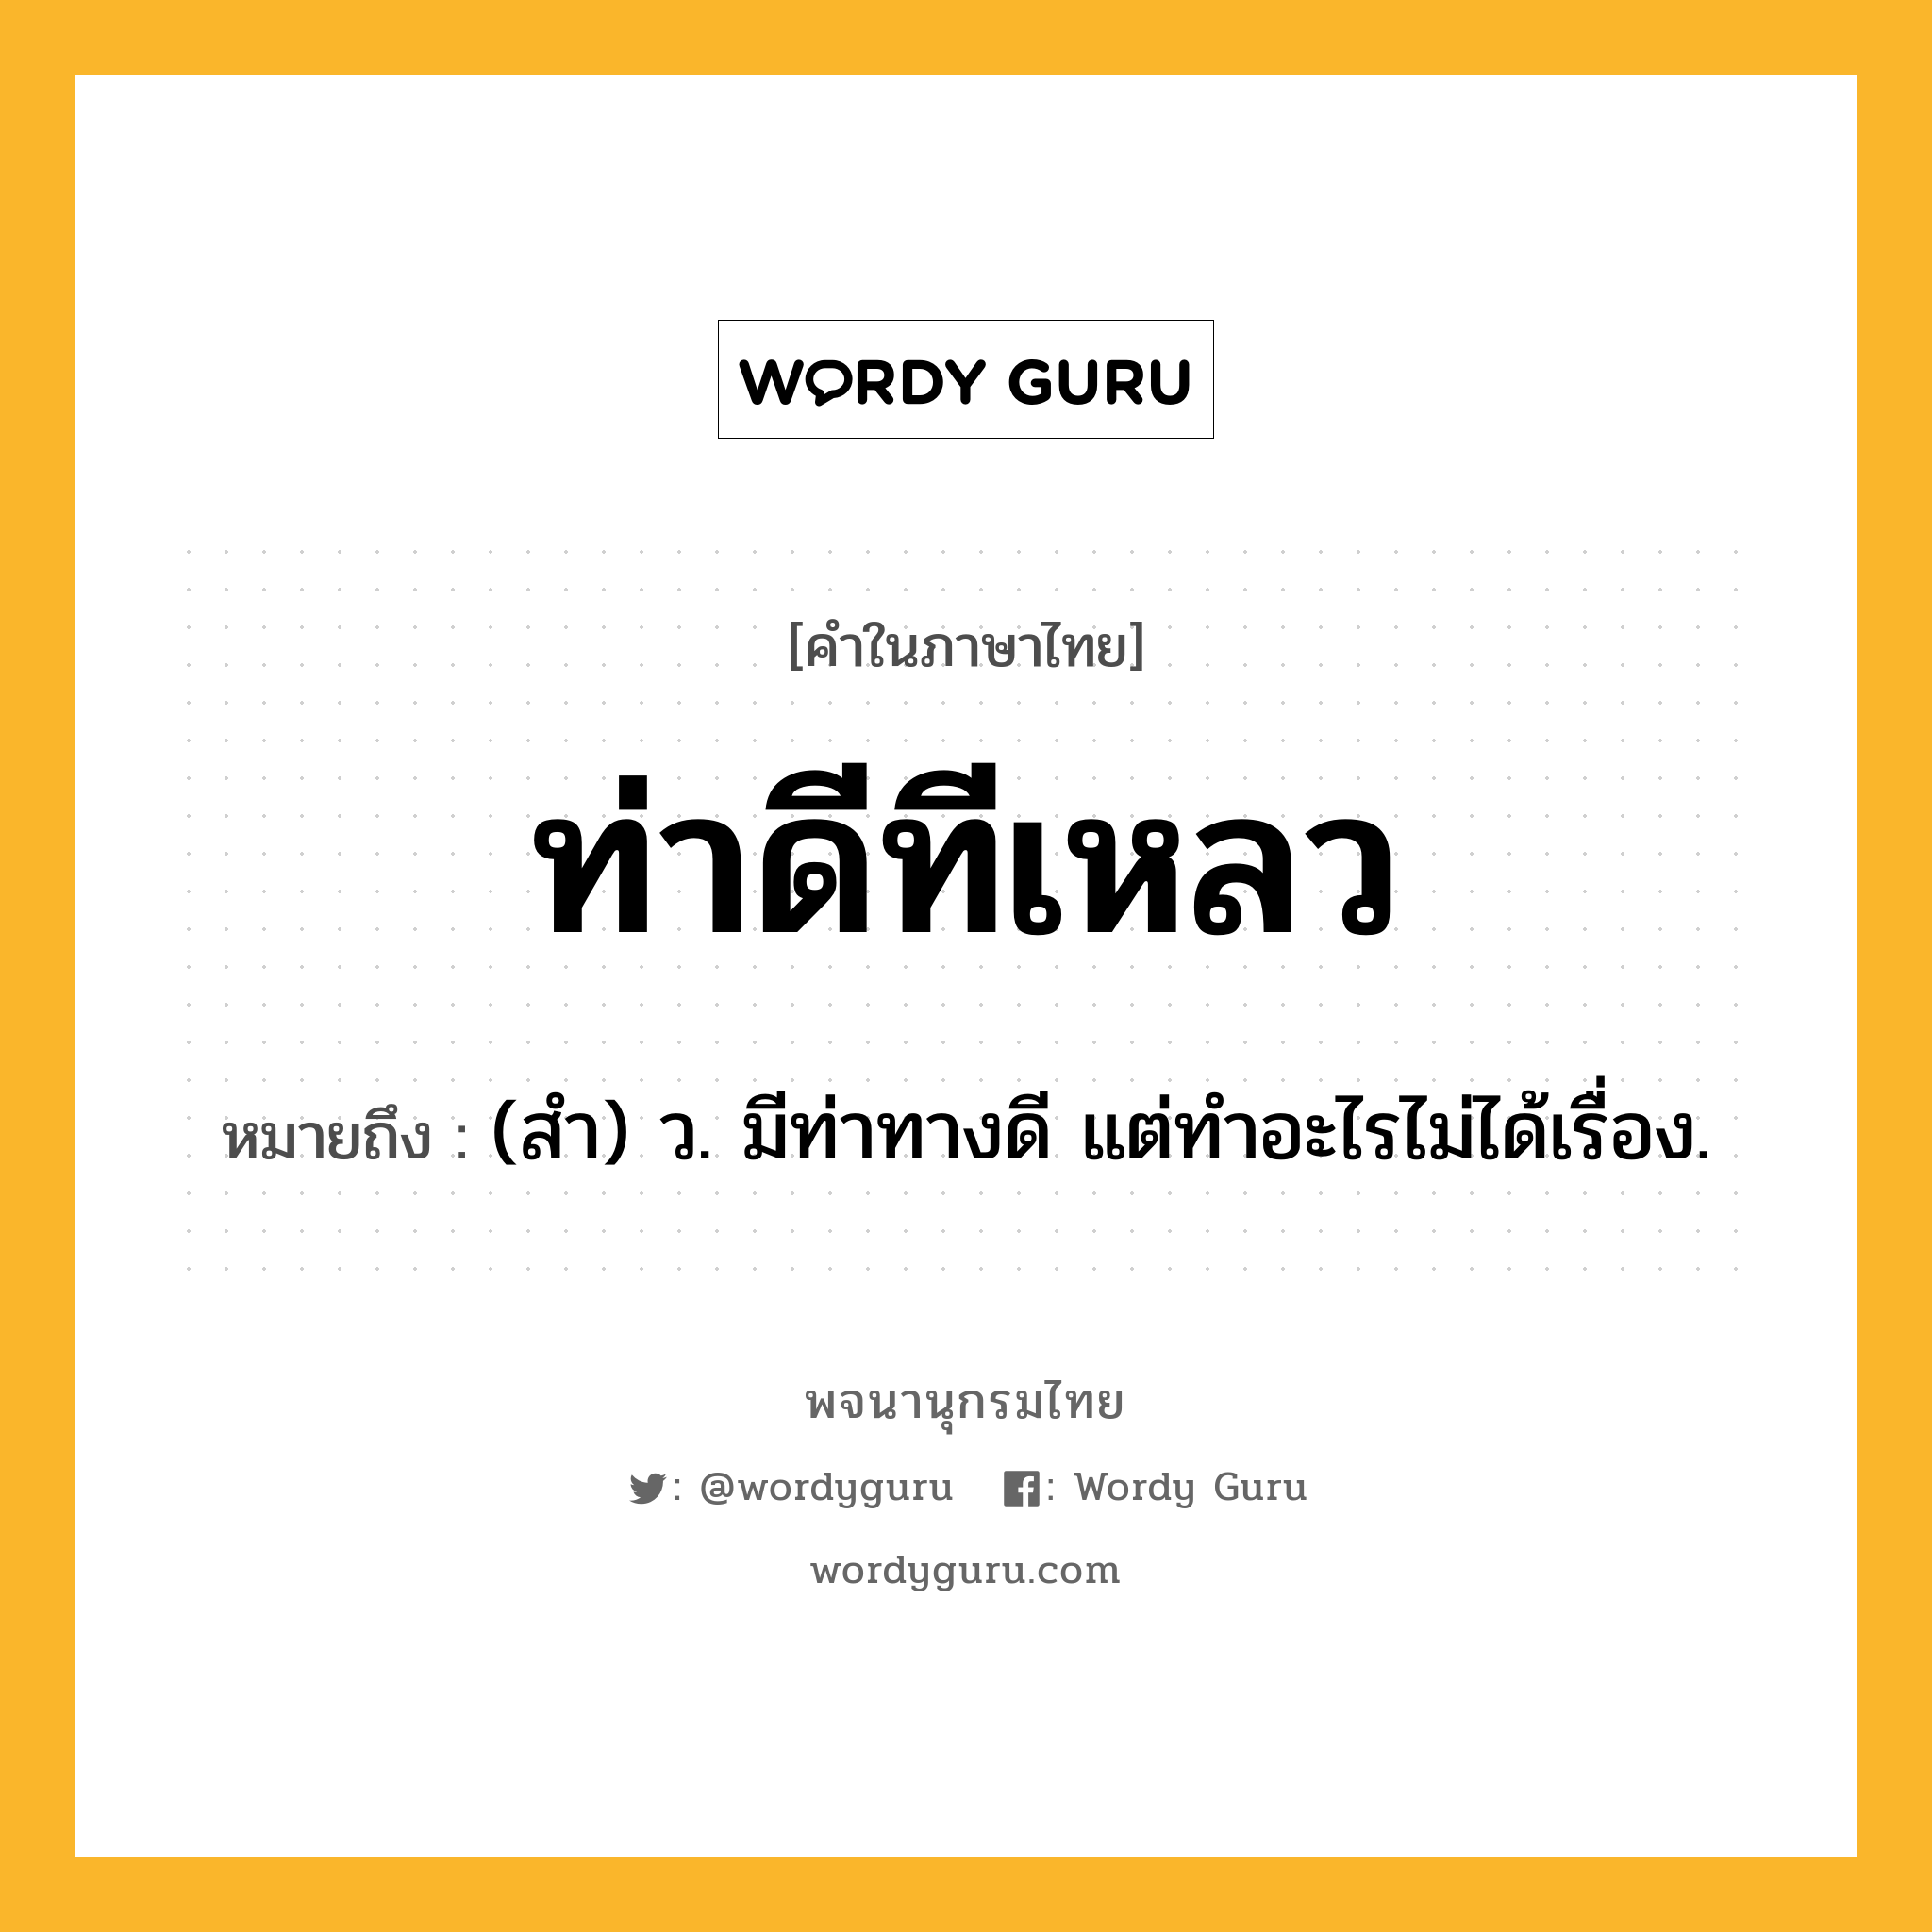 ท่าดีทีเหลว หมายถึงอะไร?, คำในภาษาไทย ท่าดีทีเหลว หมายถึง (สํา) ว. มีท่าทางดี แต่ทําอะไรไม่ได้เรื่อง.